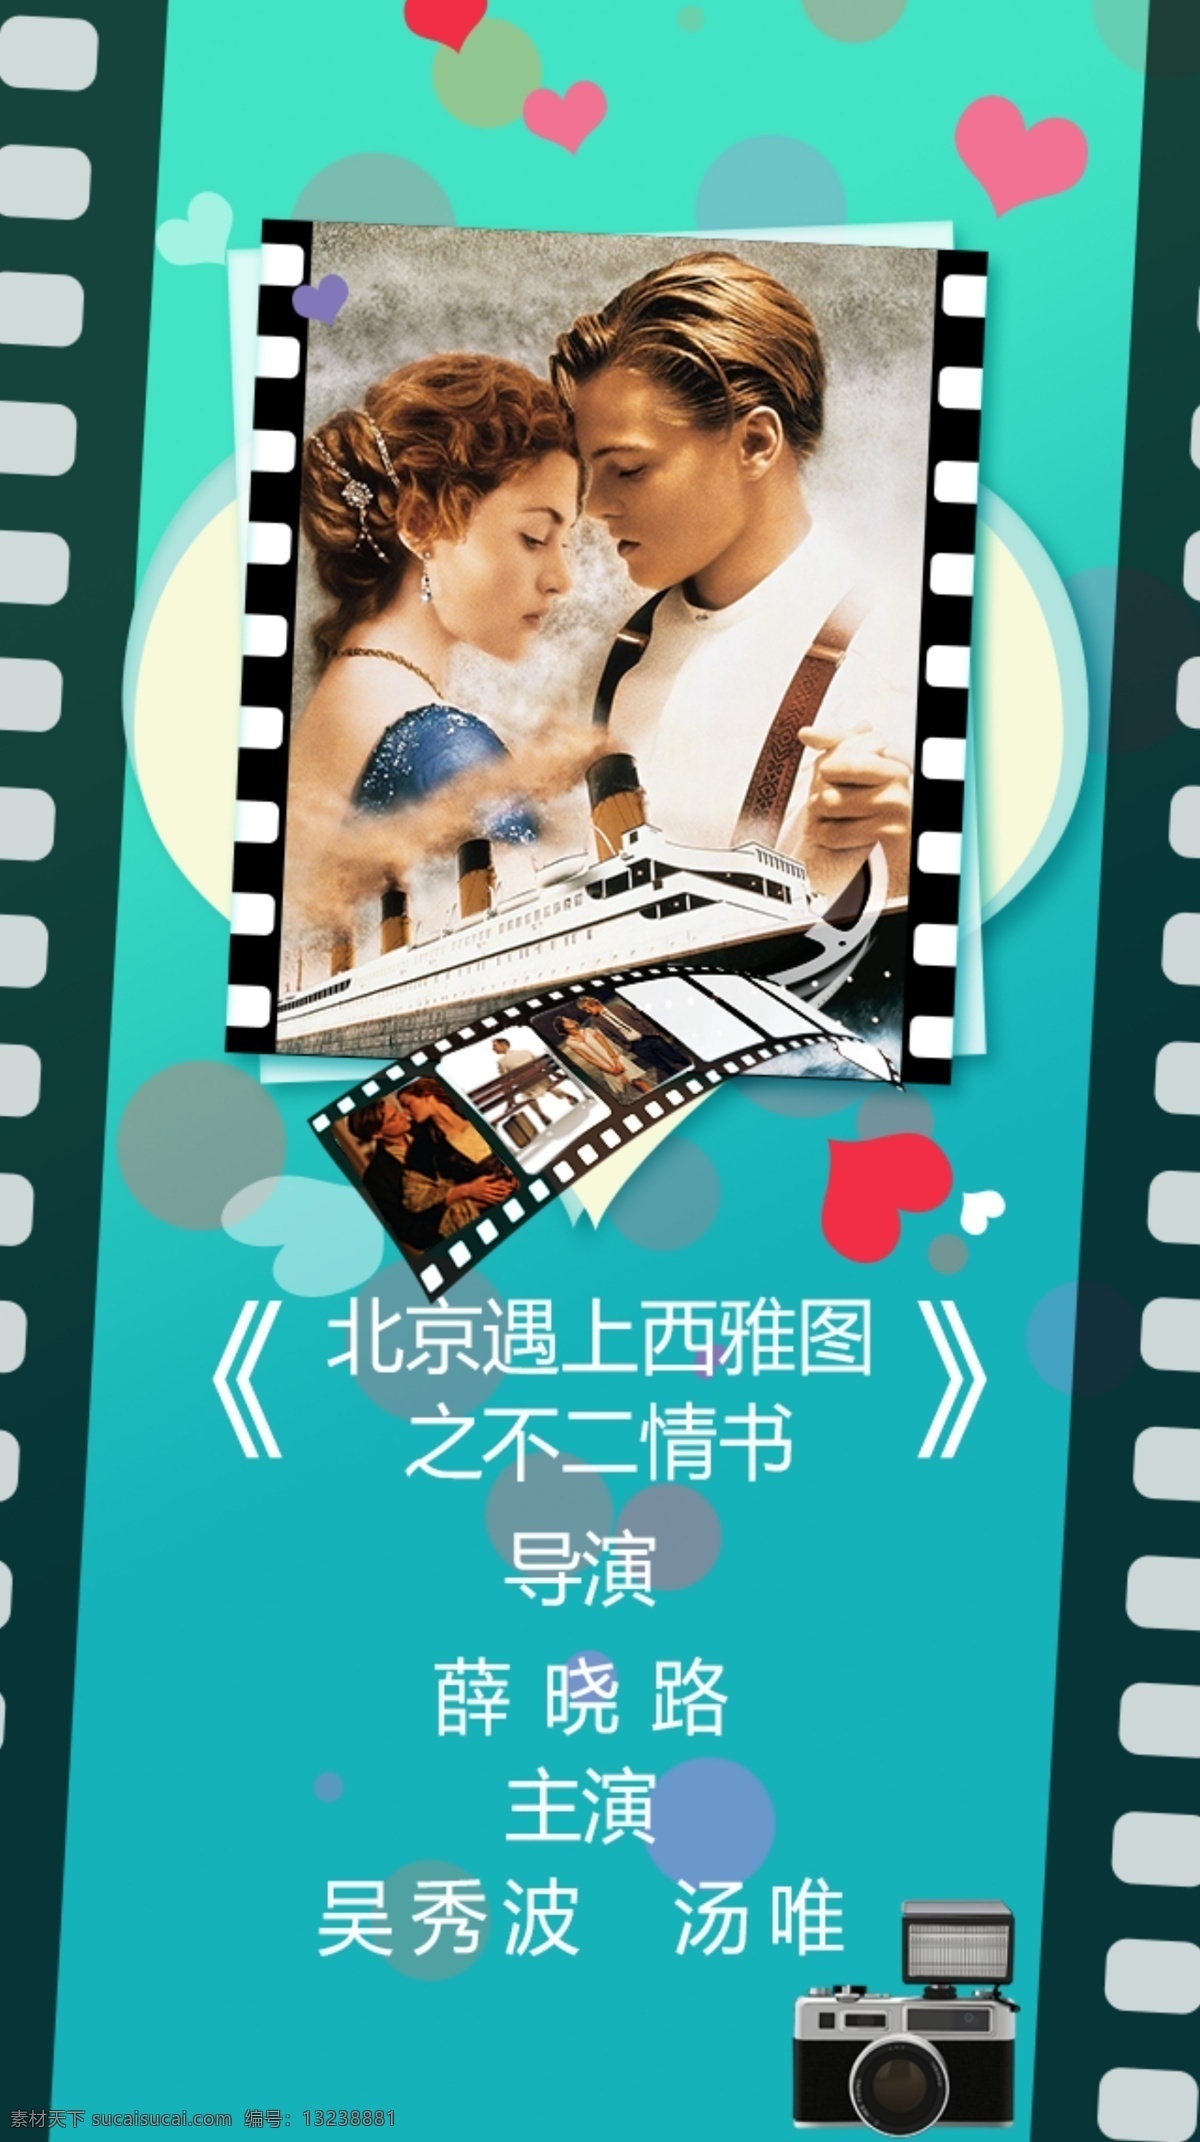 小清 新大 学生 电影 宣传海报 手机 端 屏保 大学生电影 海报 宣传图 爱情